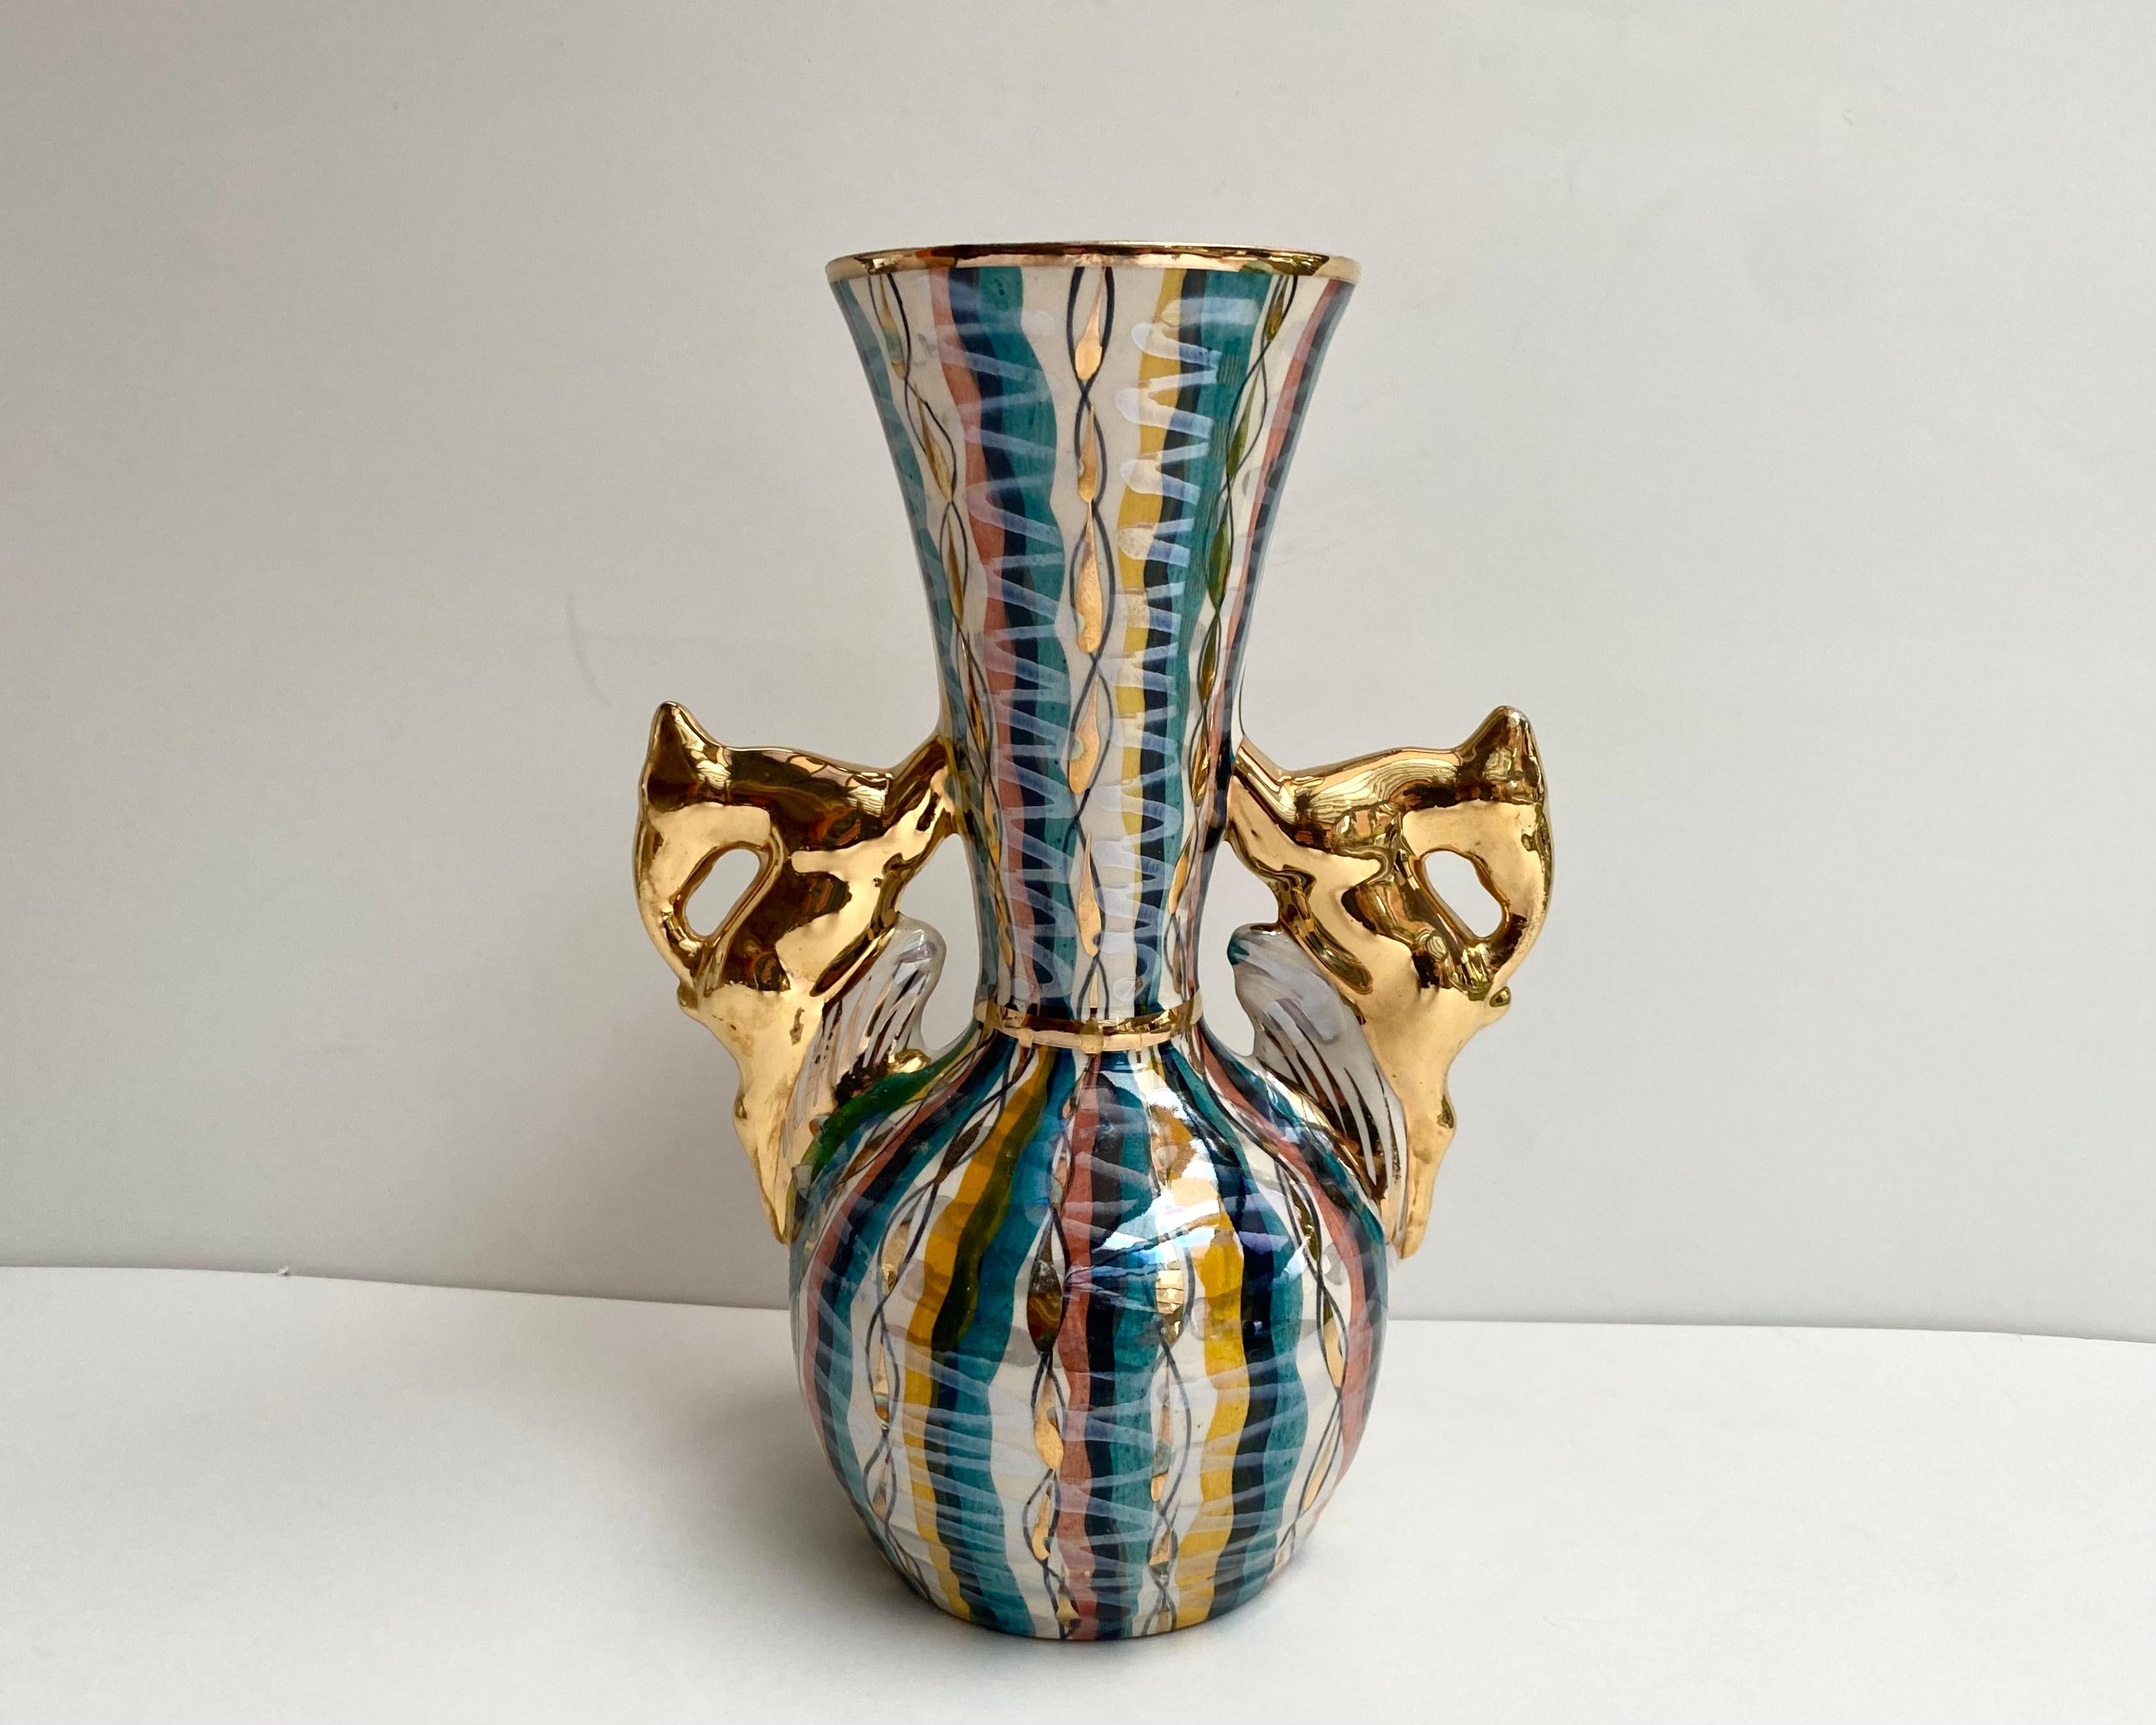 Vintage seltene Vase von schöner Form mit Hirschfiguren anstelle von Griffen von der berühmten belgischen Marke H. Bequet 

Hergestellt in den 1960er Jahren.

Schönes Farbschema mit Perlmutt-Emaille und 24-karätiger Vergoldung.

Vollständig